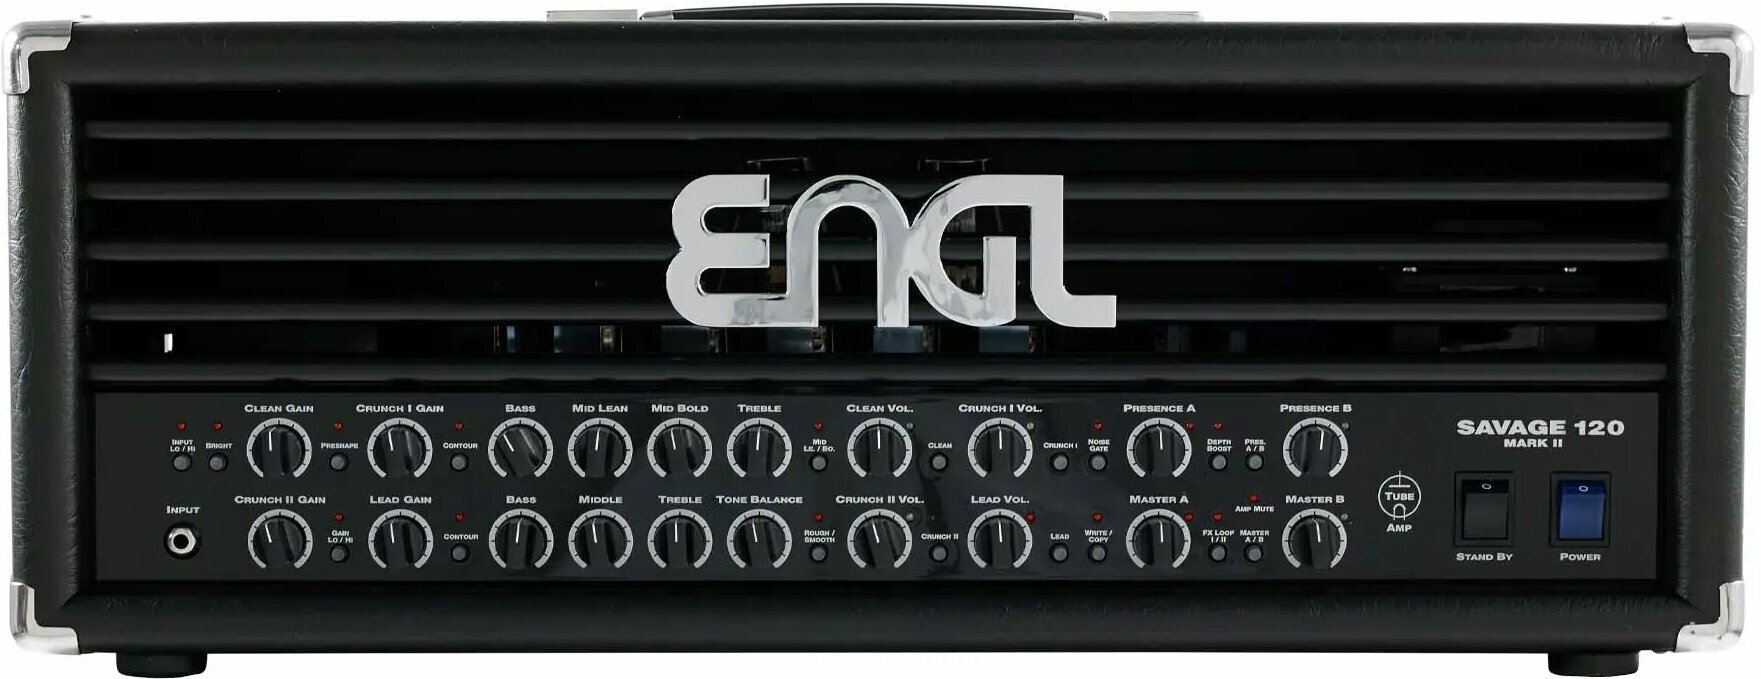 Amplificator pe lămpi Engl E610II Savage 120 MARK II